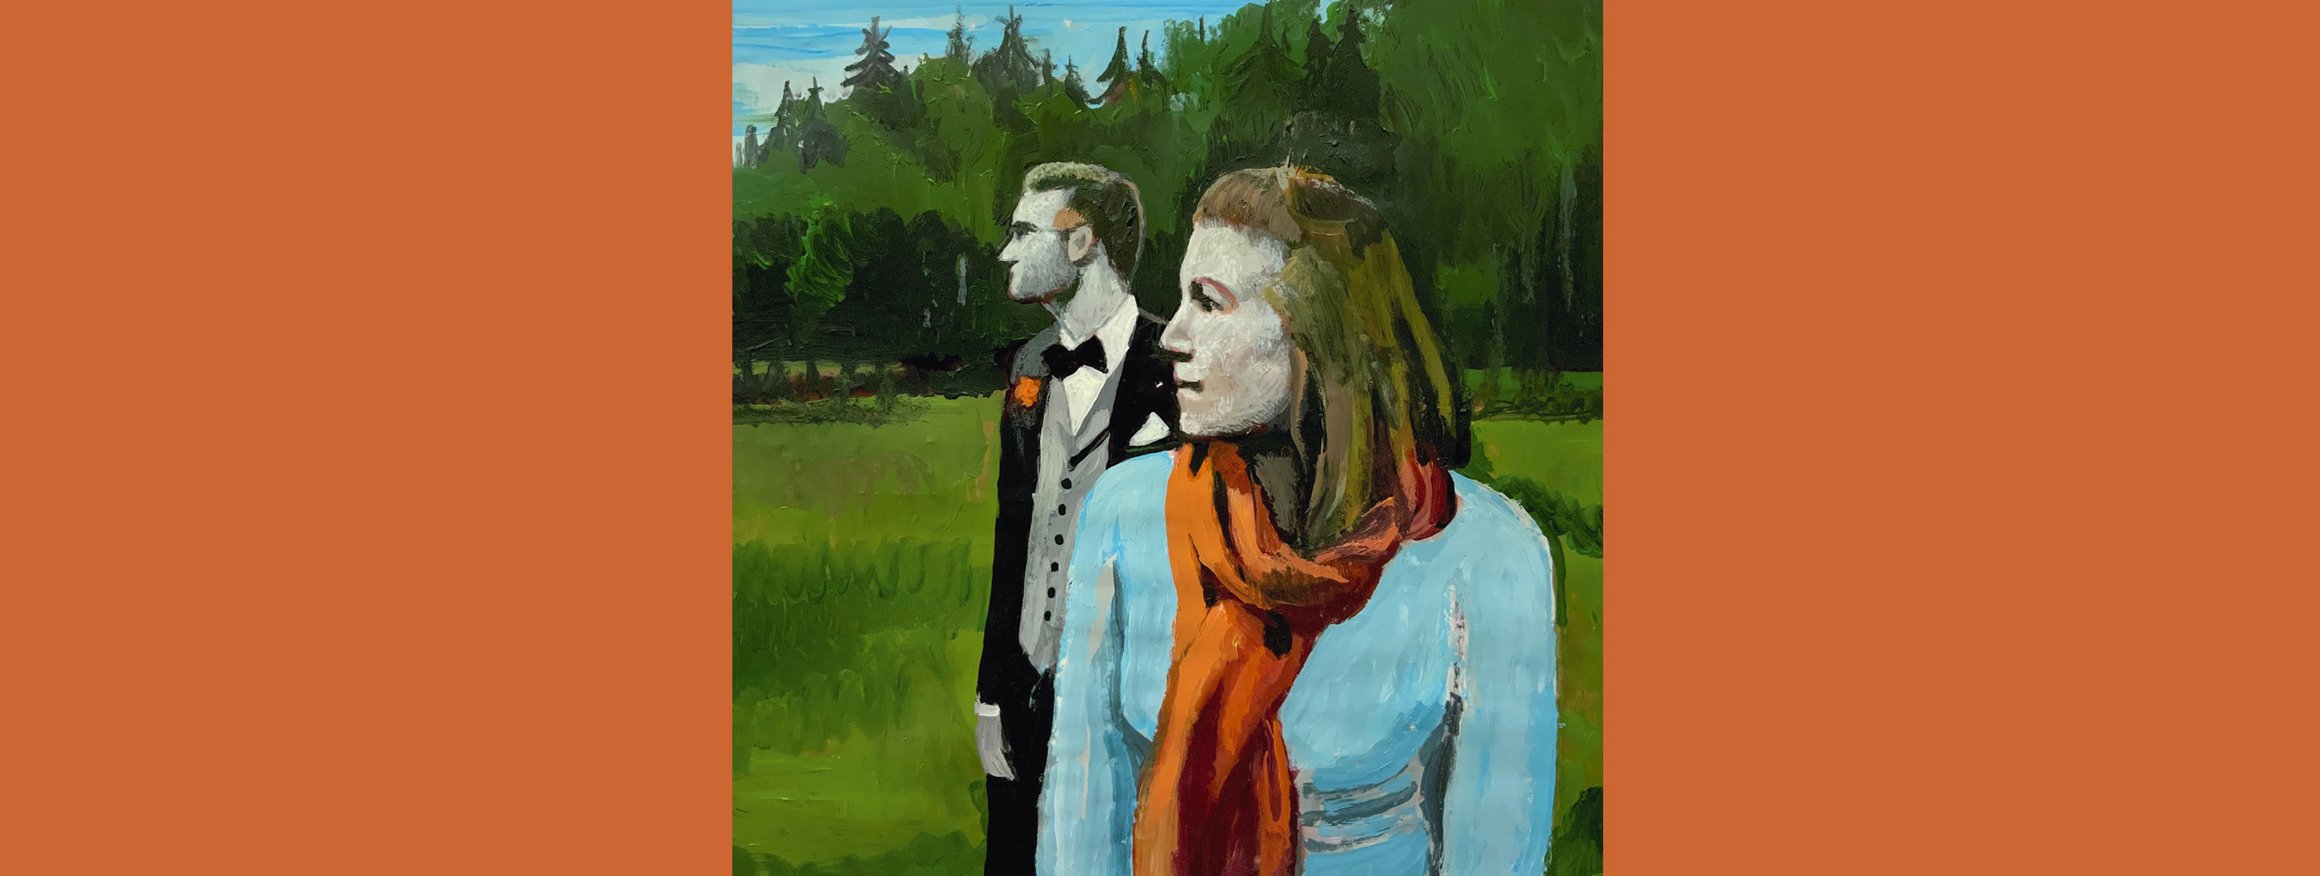 Die Illustration zeigt eine Frau mit einem Mann im Hintergrund auf einer Wiese am Wald, und beide schauen in die selbe Richtung